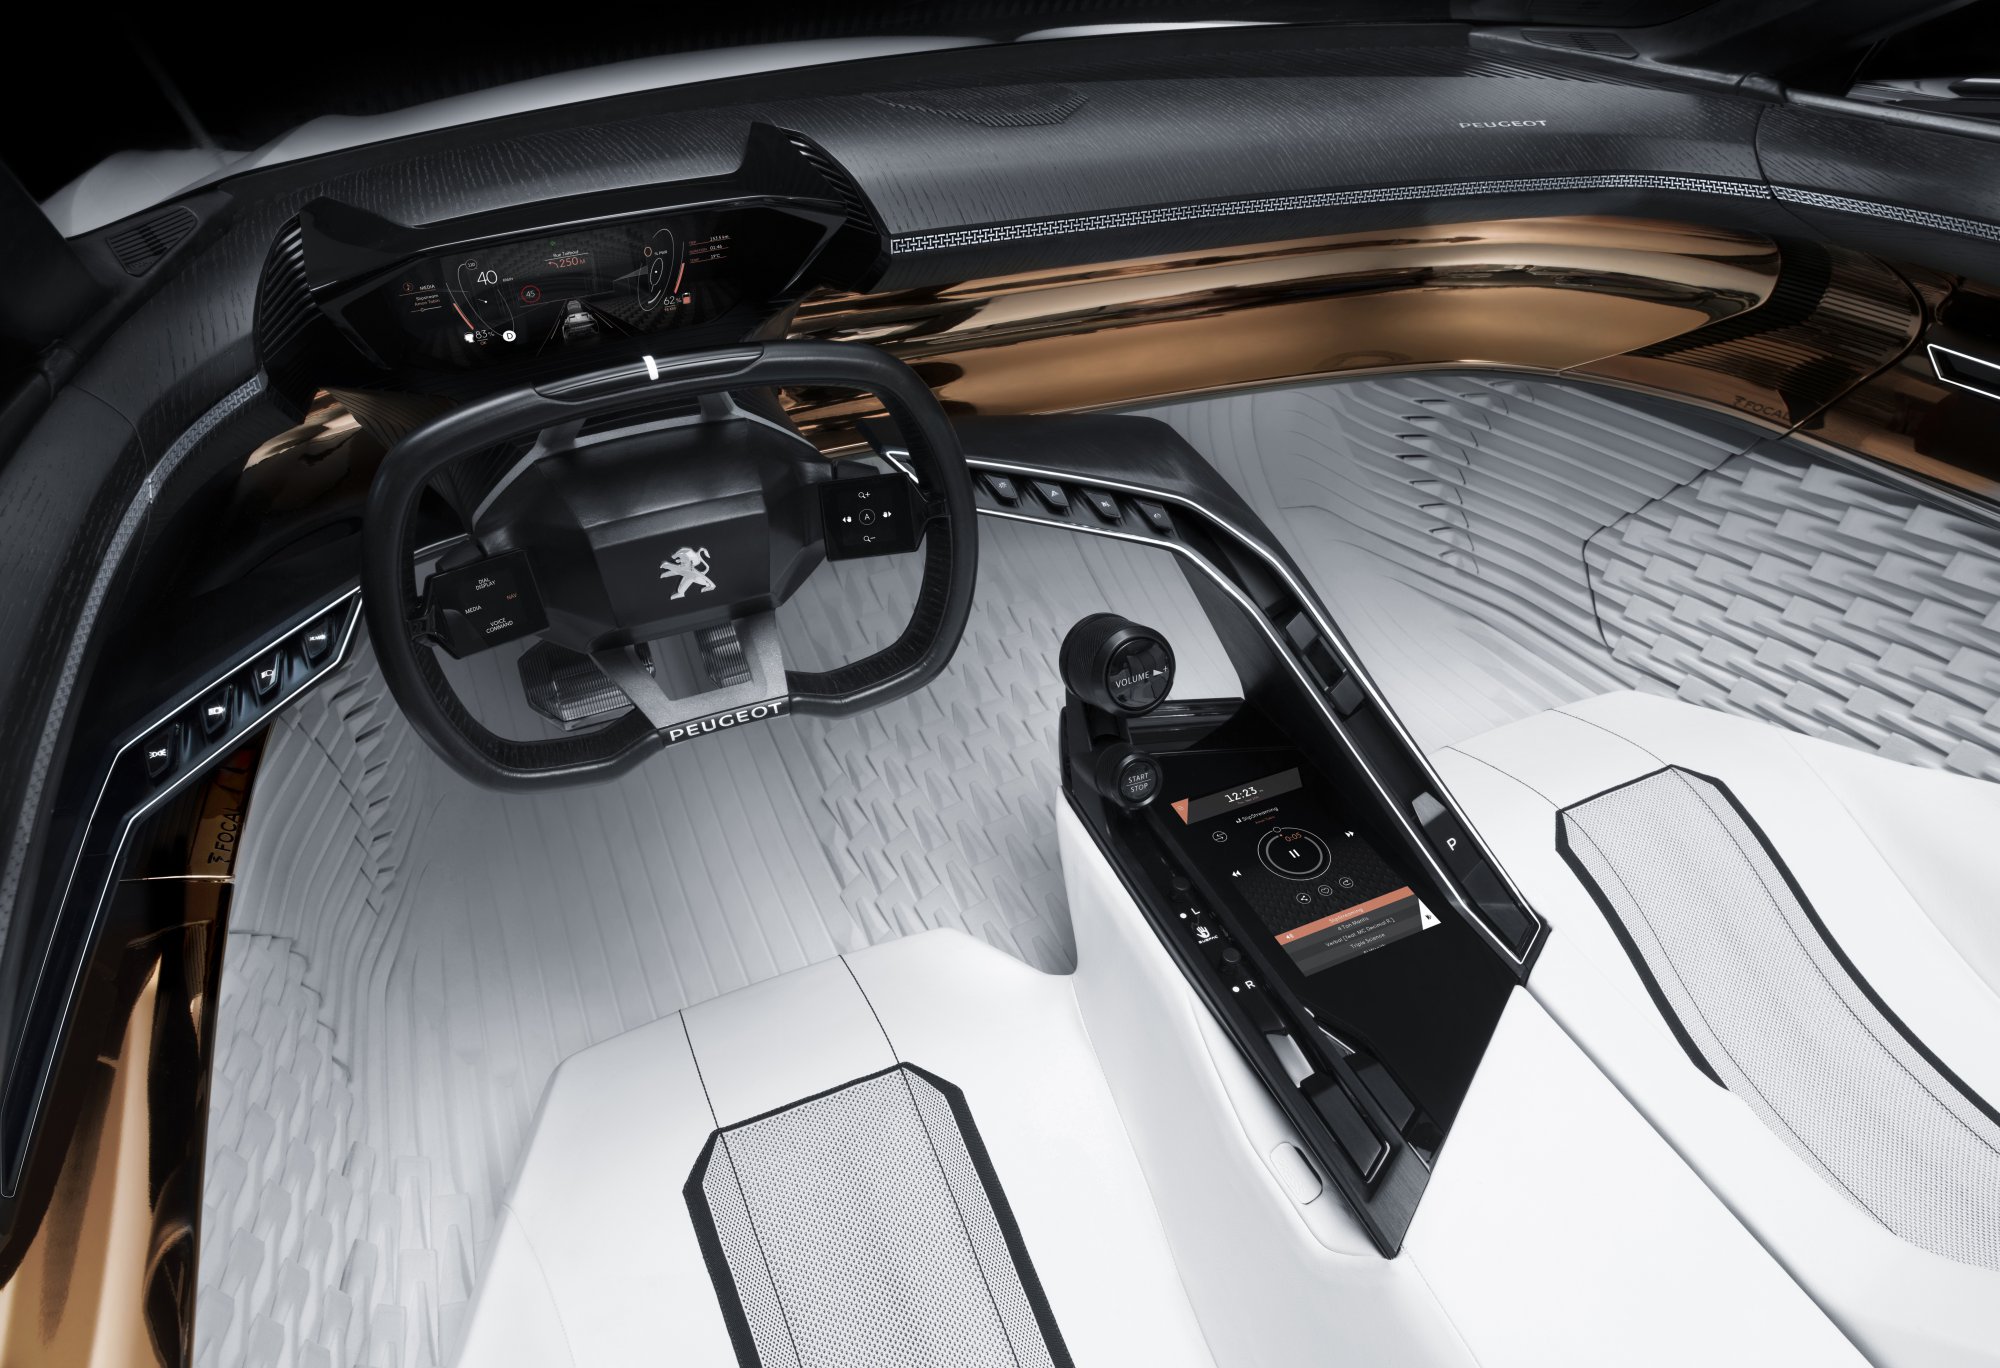 Peugeot Fractal concept at frakfurt is glimpse of futurre car interiors